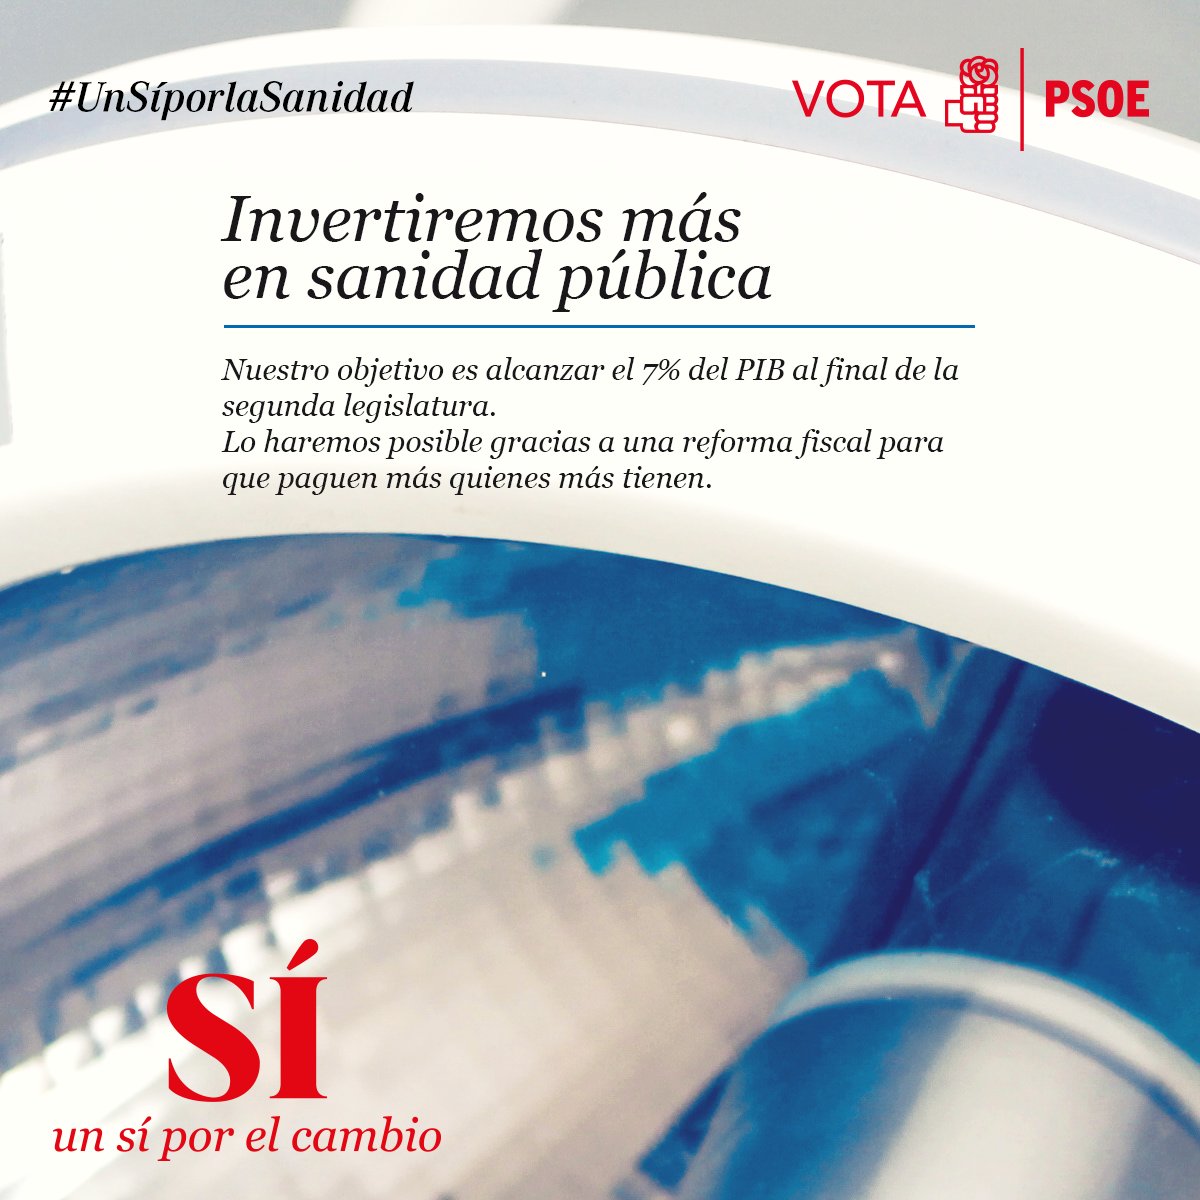 Fundación ideas y grupo PRISA, Pedro Sánchez Susana Díaz & Co, el topic del PSOE - Página 7 Ck7MlijWkAA0x9W